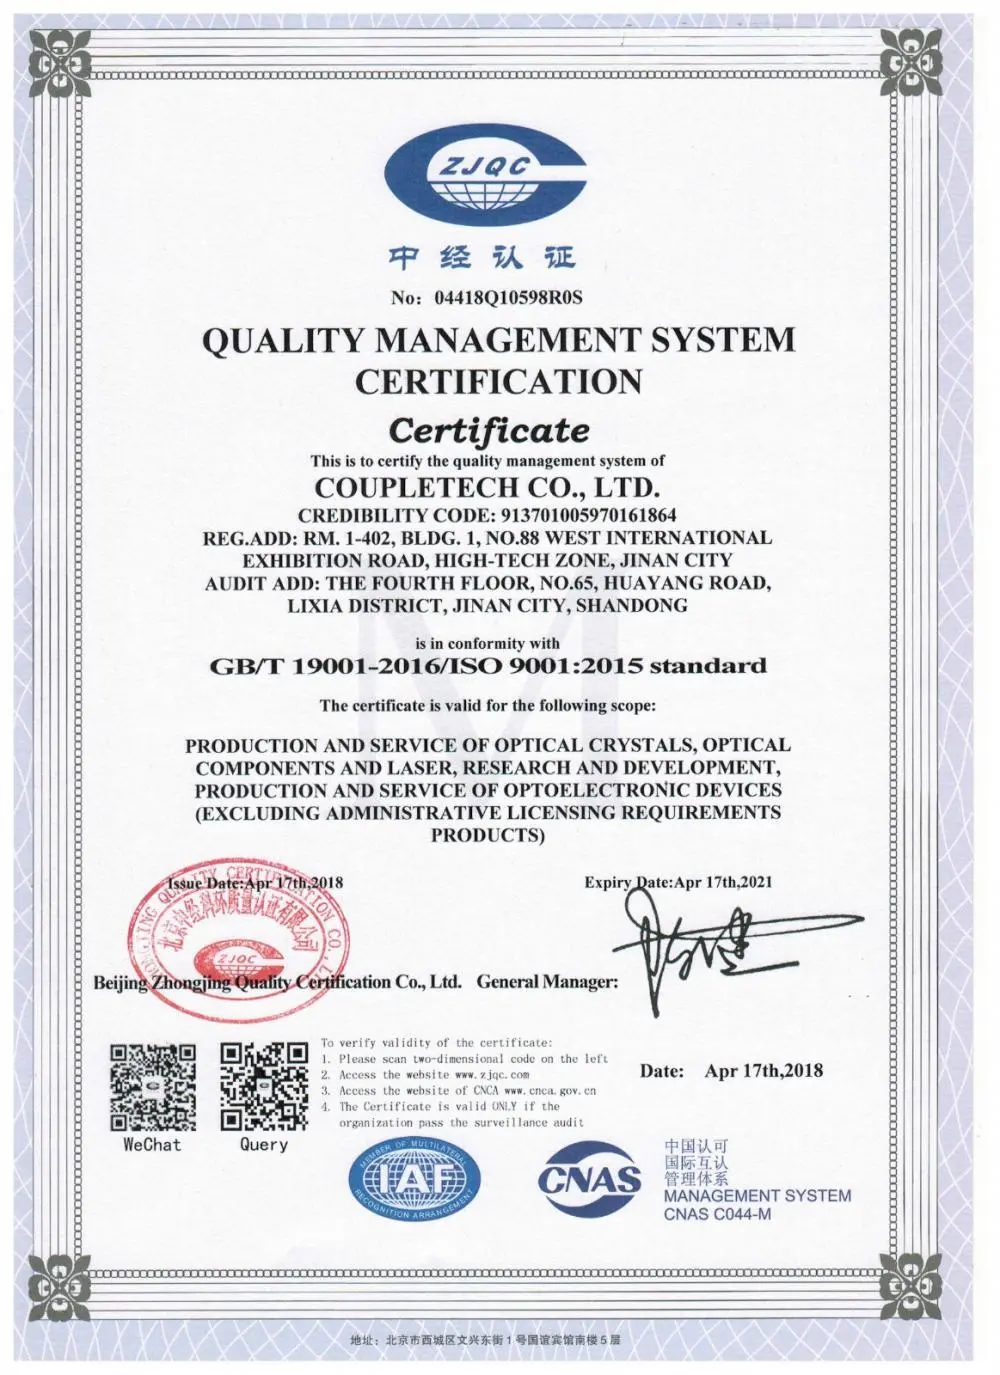 Coupletech Co., Ltd. har bestået certificeringen: Et modulært beslag til aktive temperaturkontrolkrystaller.